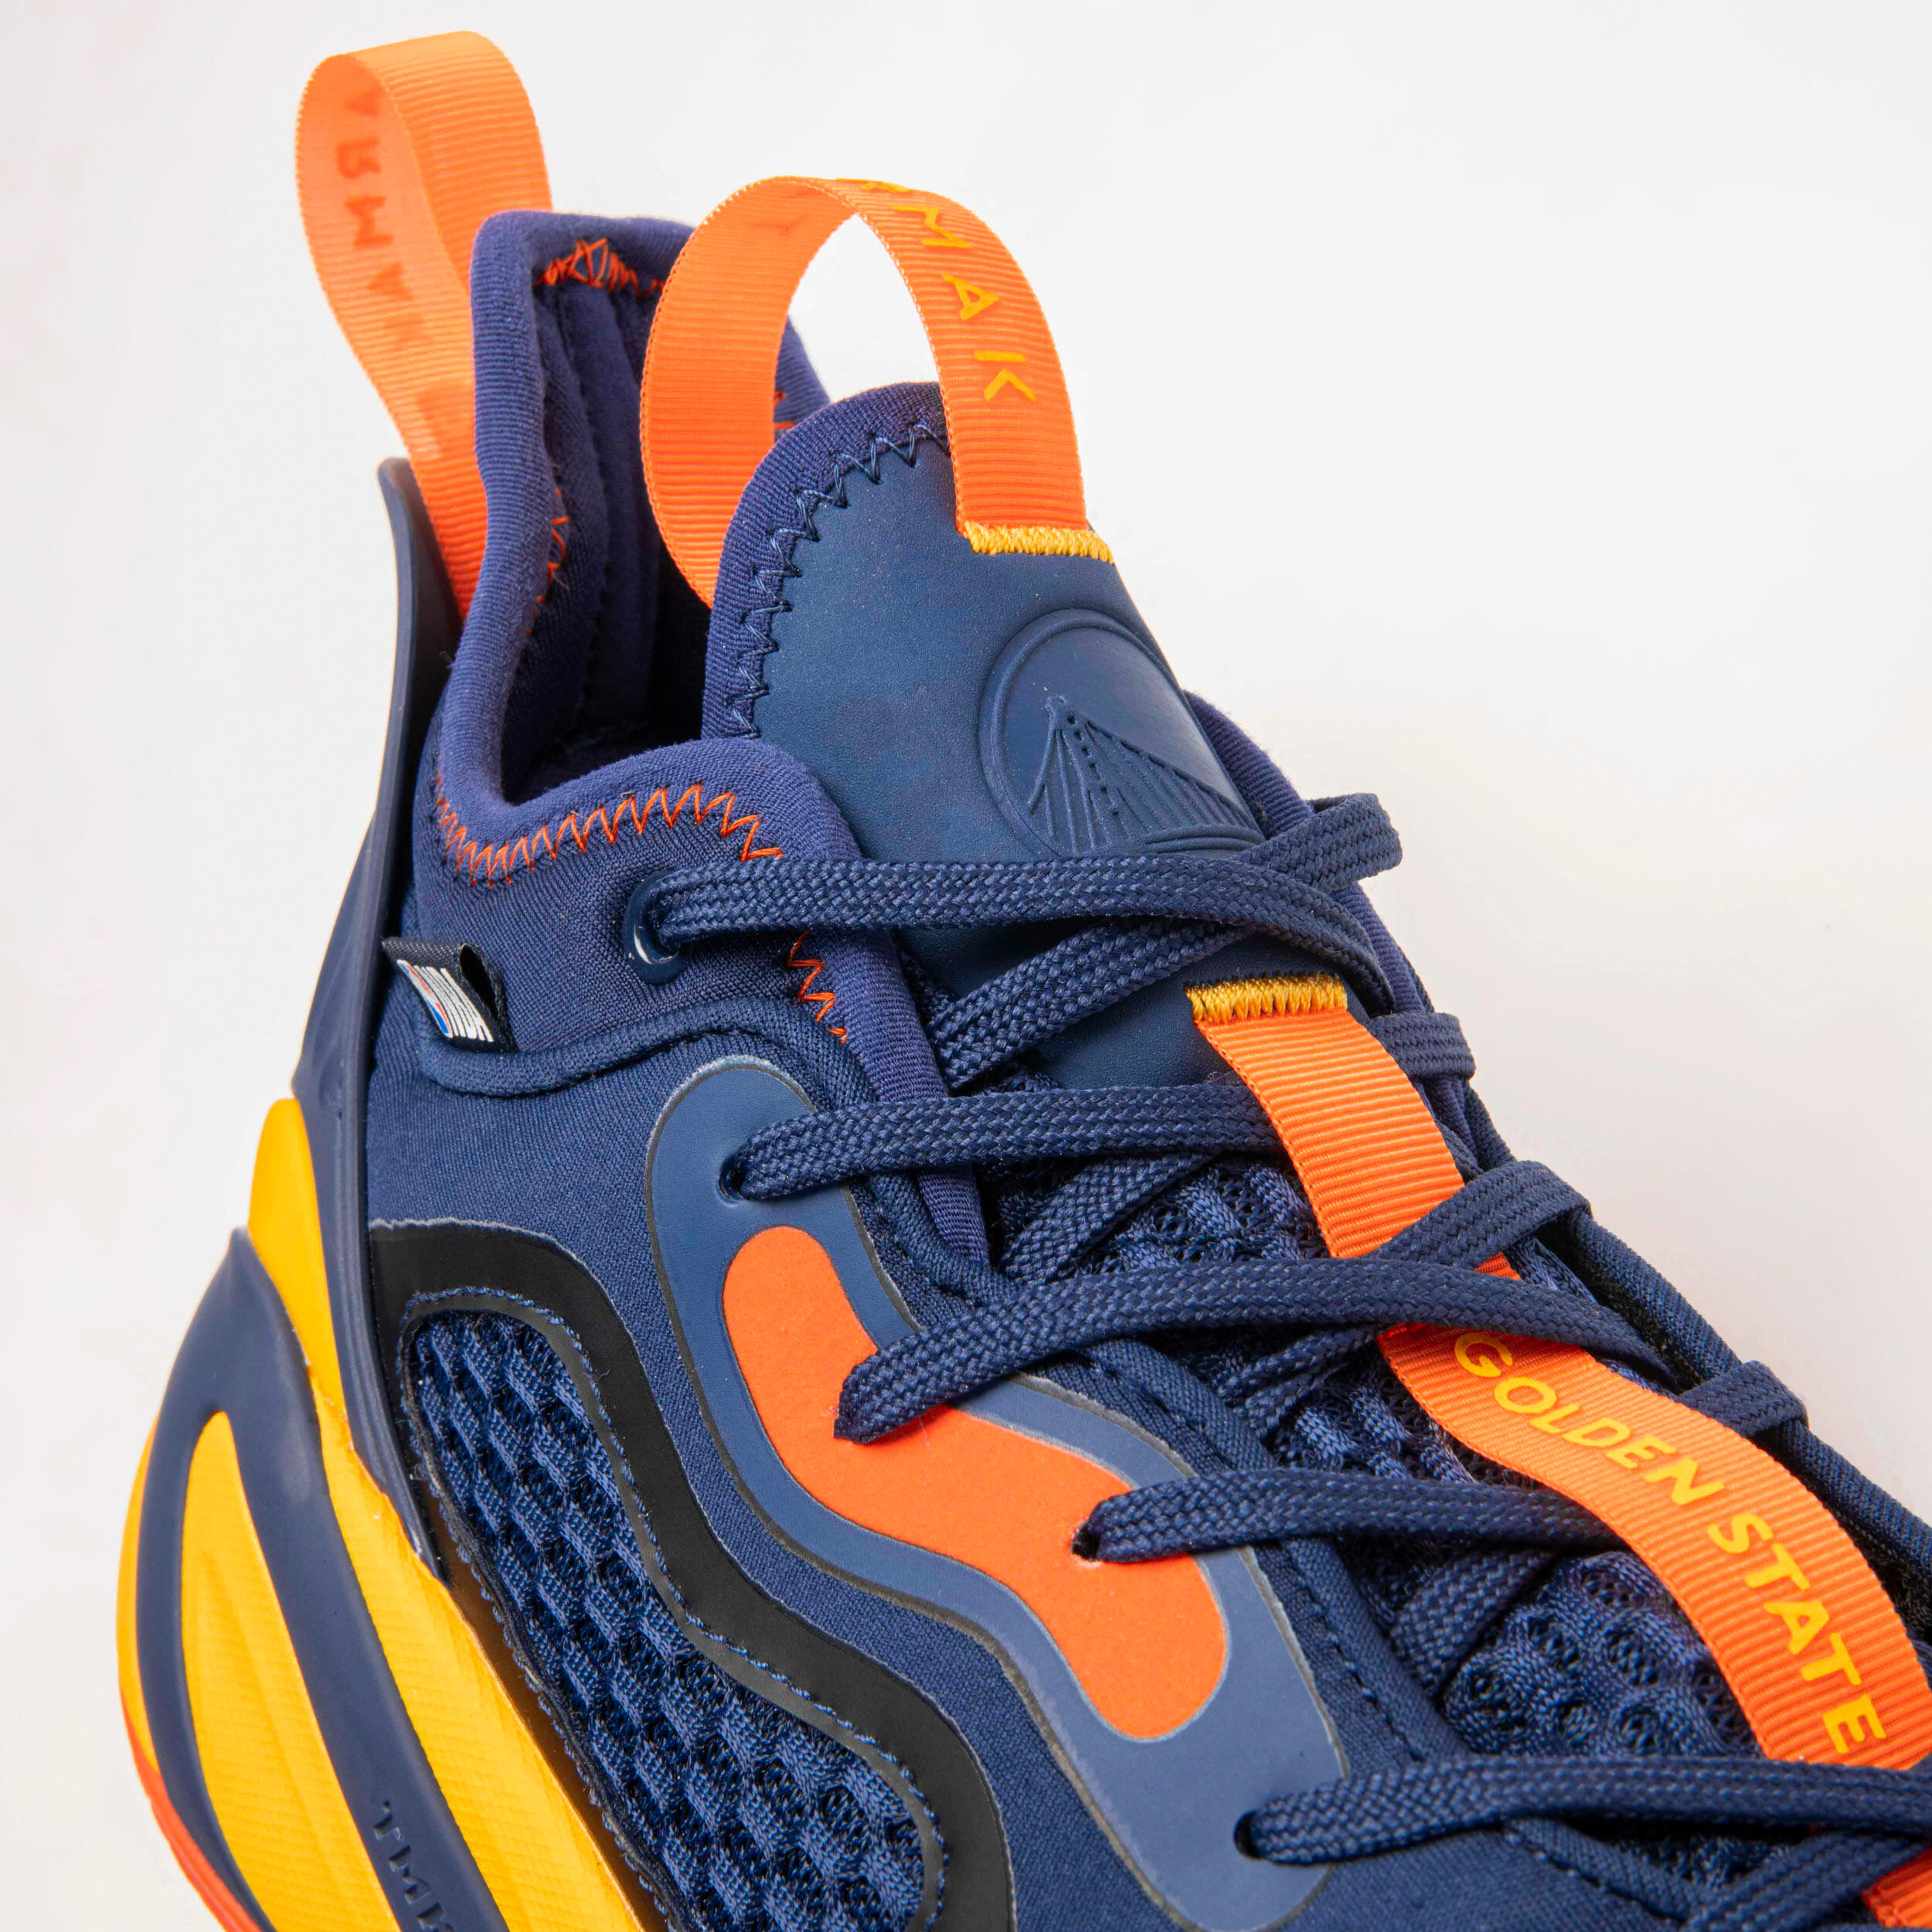 Men's/Women's Basketball Shoes SE900 - Blue/NBA Golden State Warriors 4/10